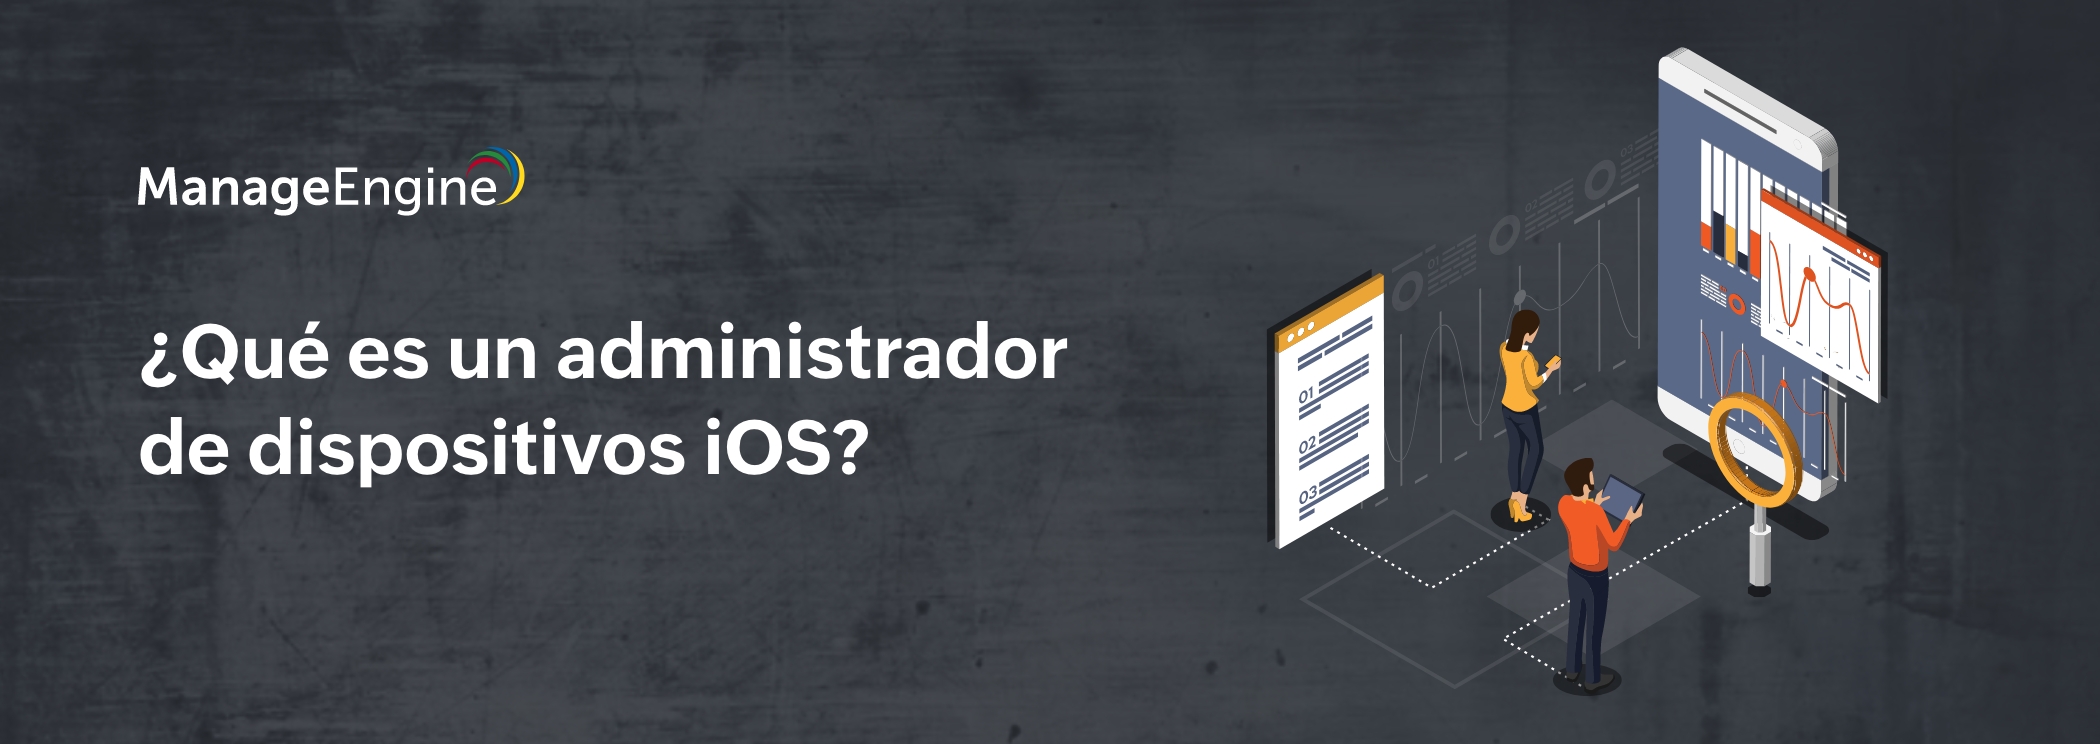 ¿Qué es un administrador de dispositivos iOS?